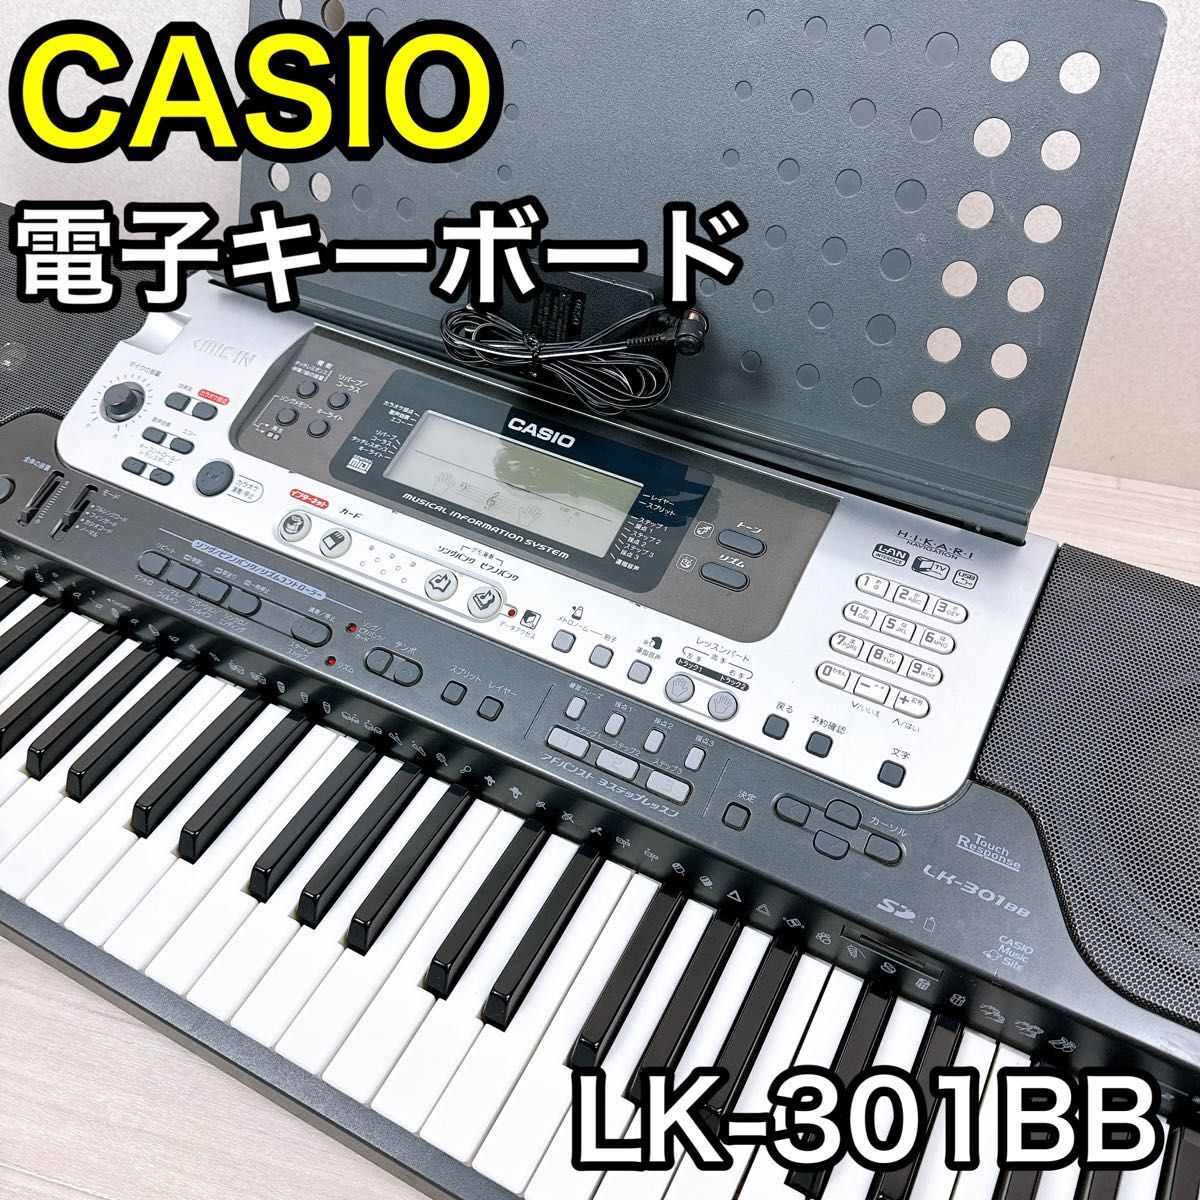 Casio Электронная клавиатура LK-301BB Оптическая навигационная система 61 Клавиатура